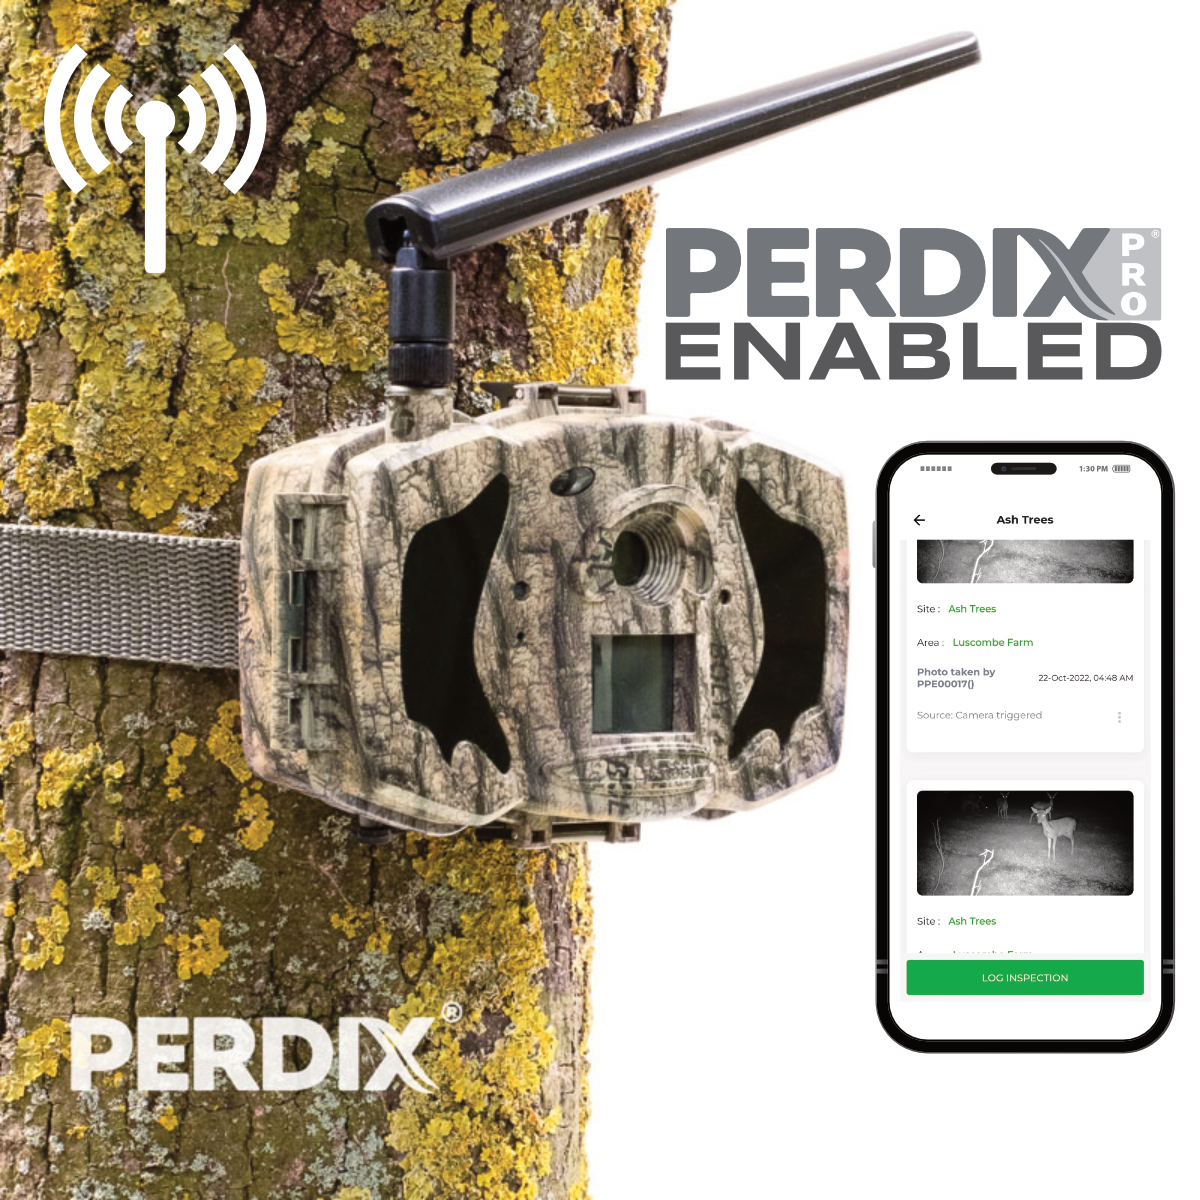 PerdixPro Enabled Cameras